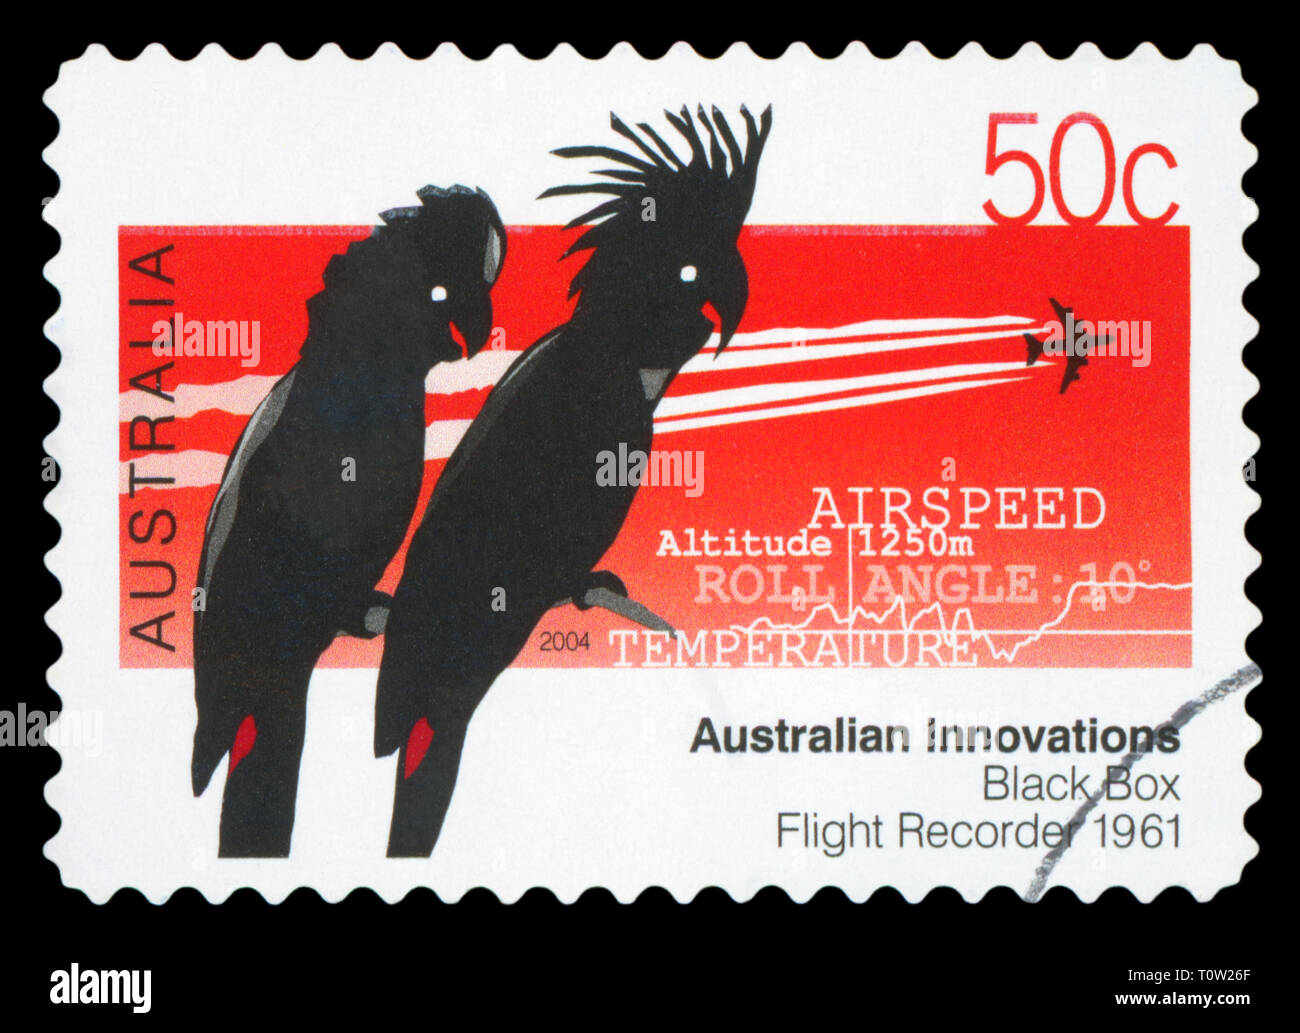 L'AUSTRALIE - circa 2004 : un timbre-poste utilisé à partir de l'Australie, la célébration de l'Australien Innovations - Boîte noire, vers 2004. Banque D'Images